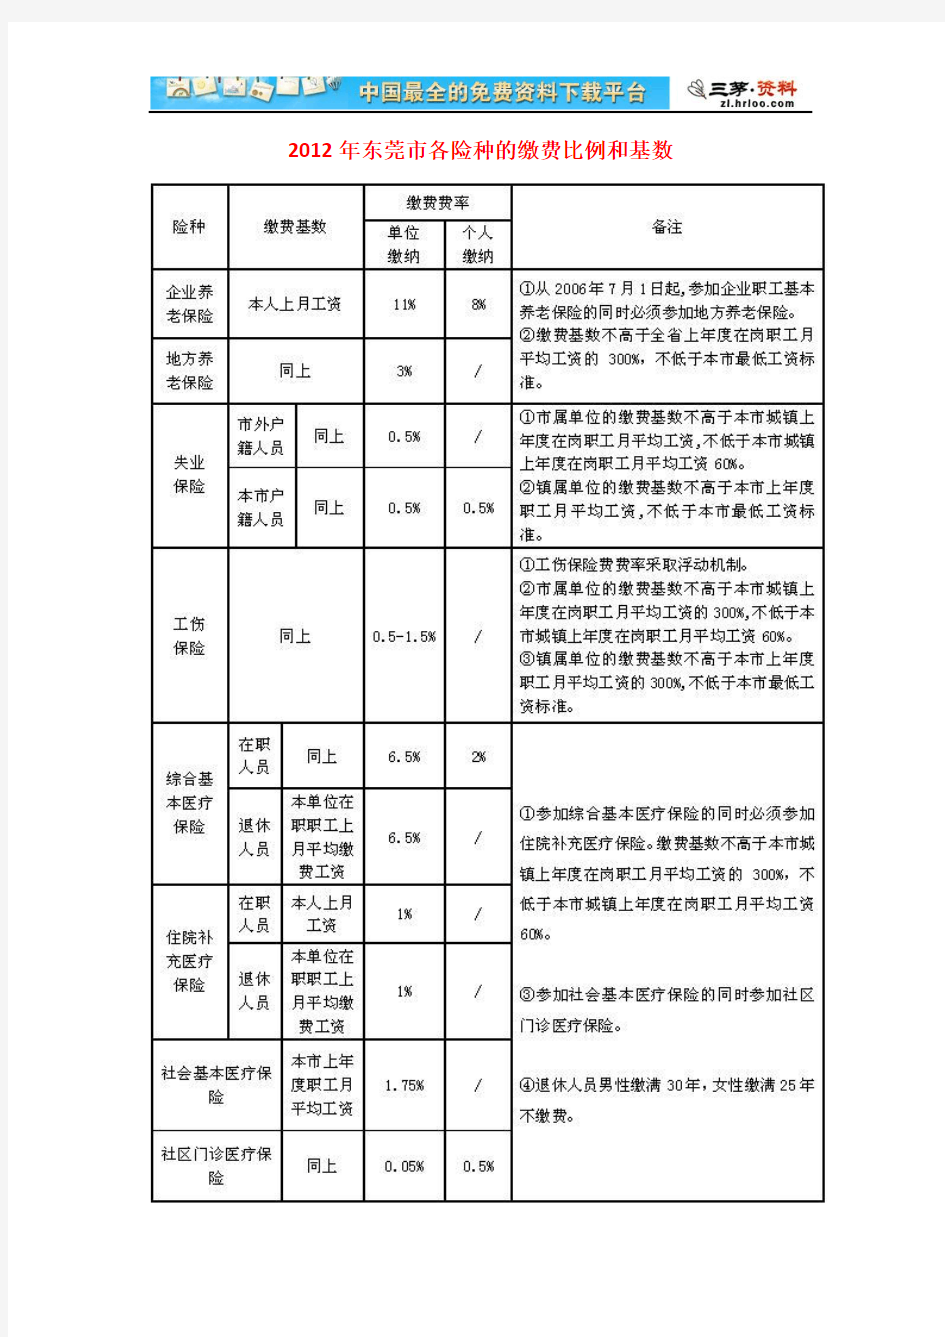 【东莞市】2012年各险种的缴费比例和基数